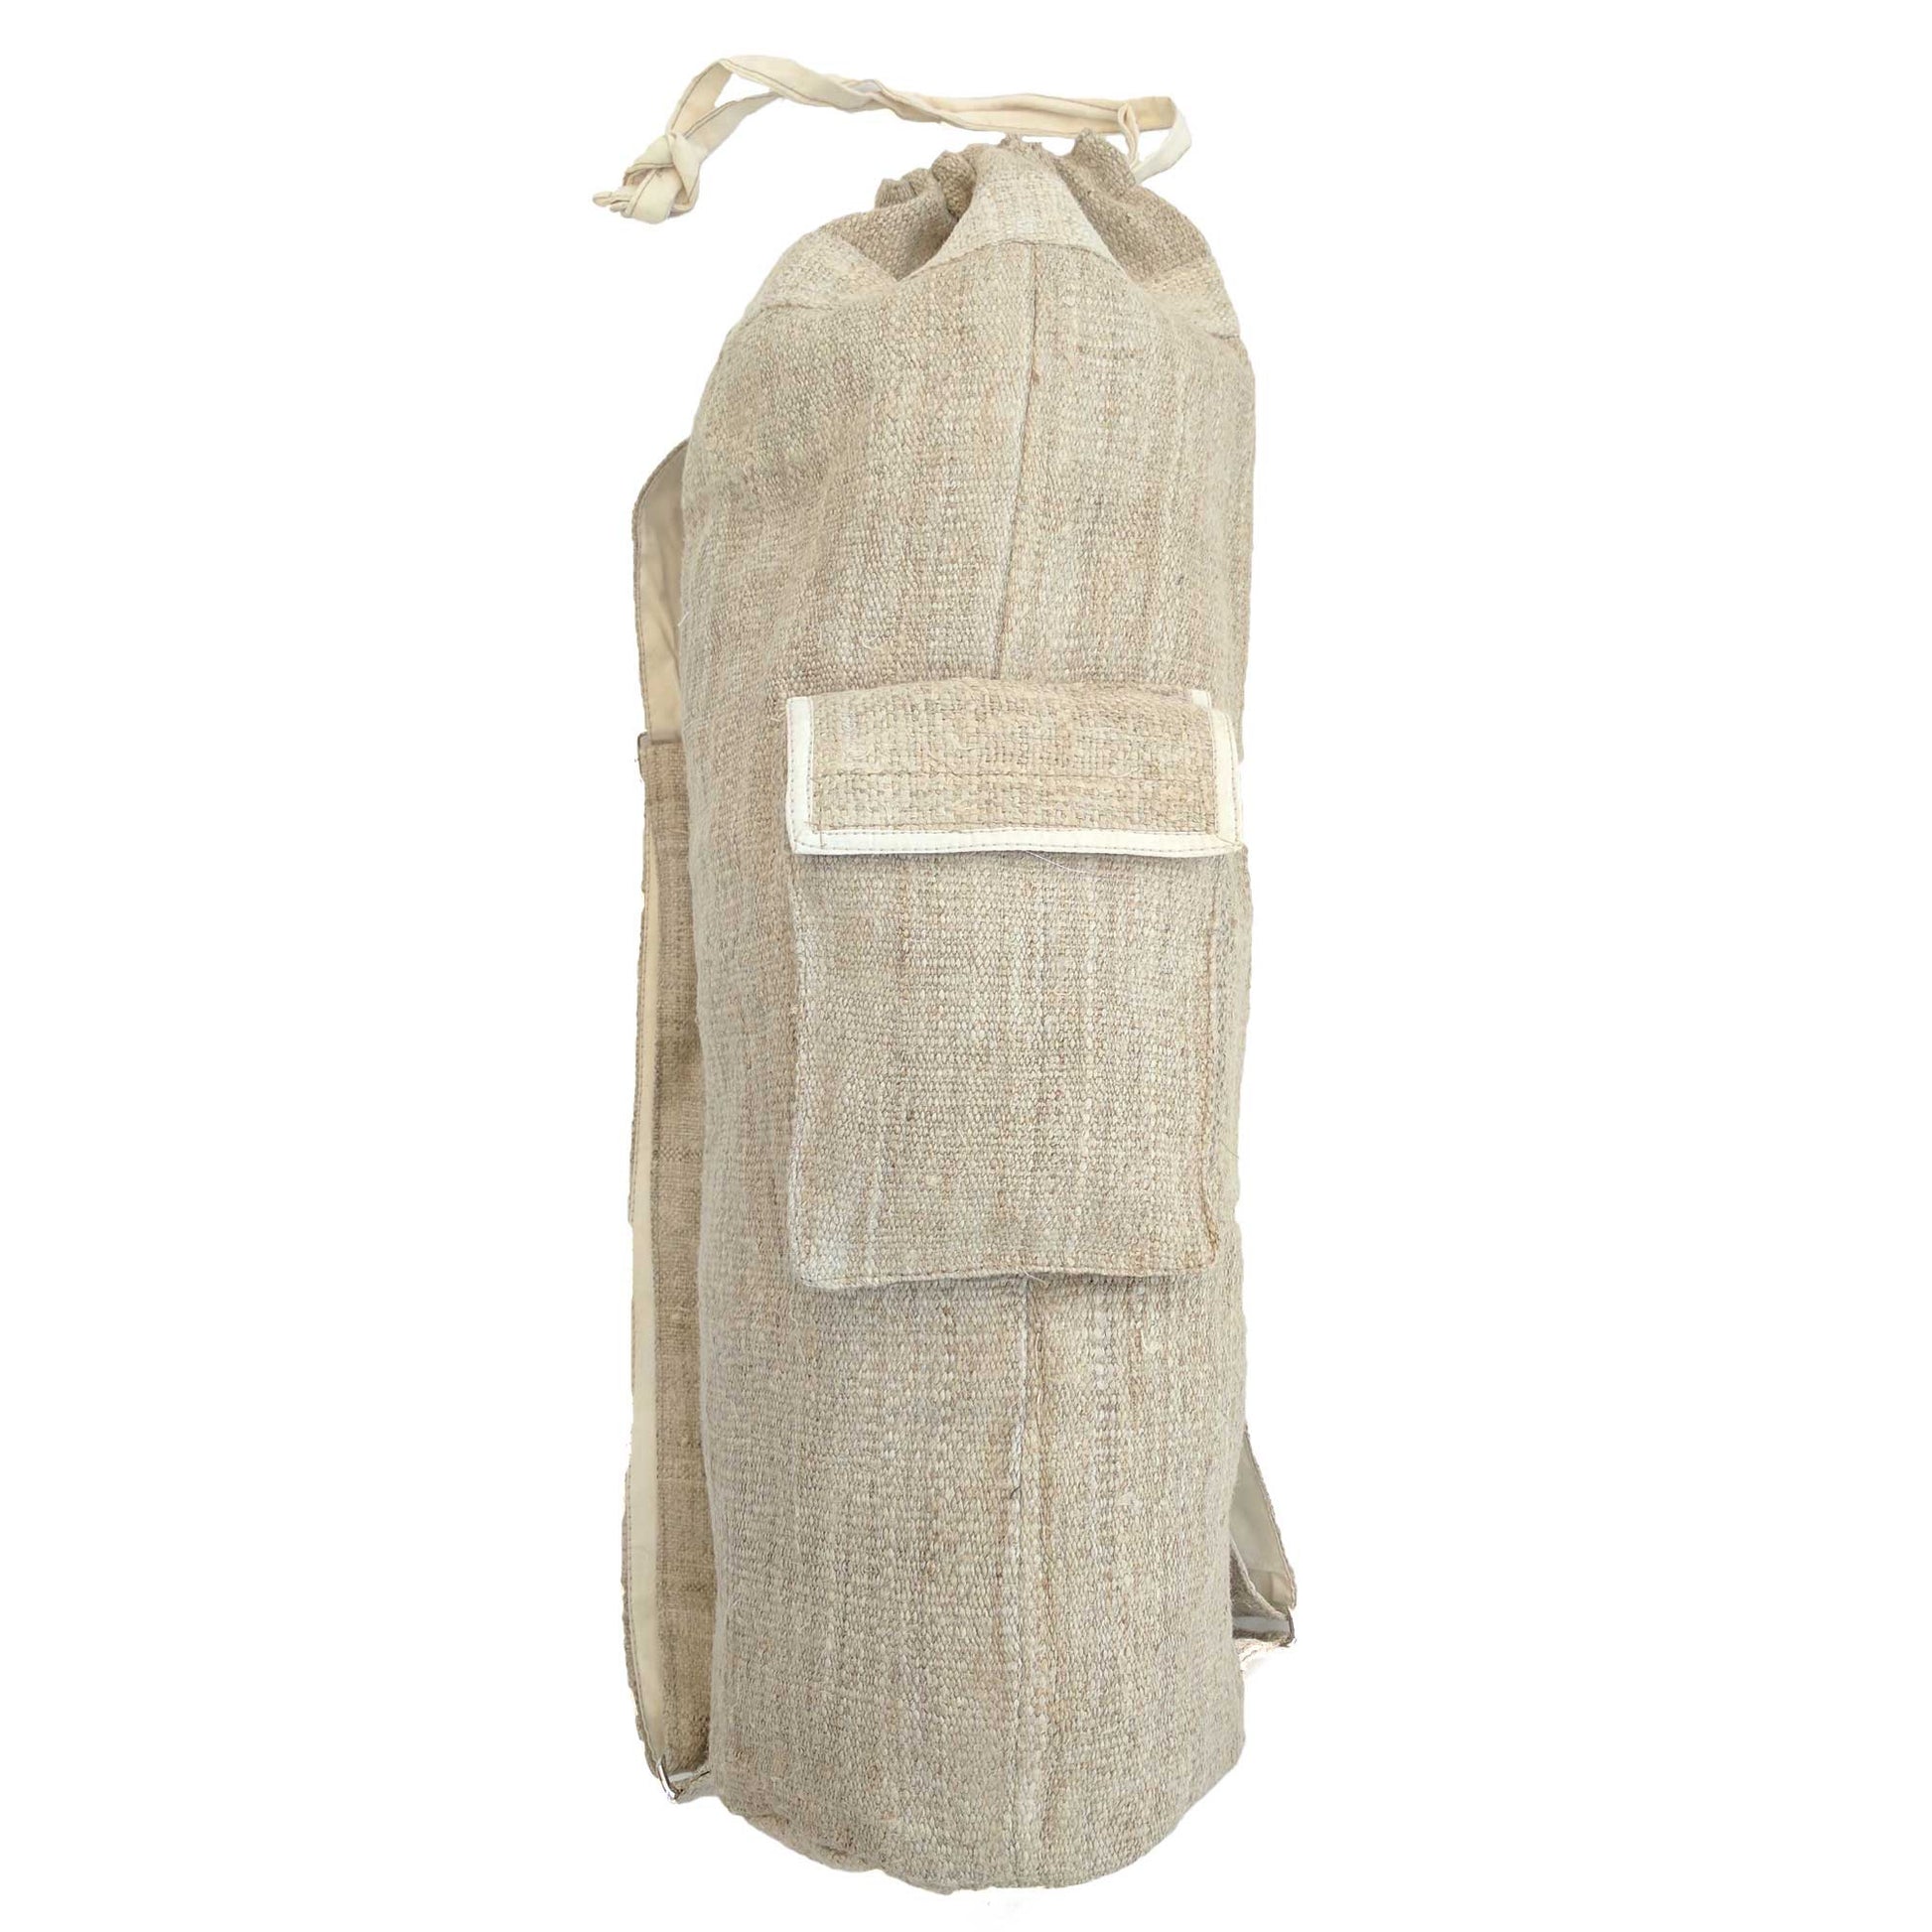 Yoga Mat Bag made from 100% pure hand woven hemp